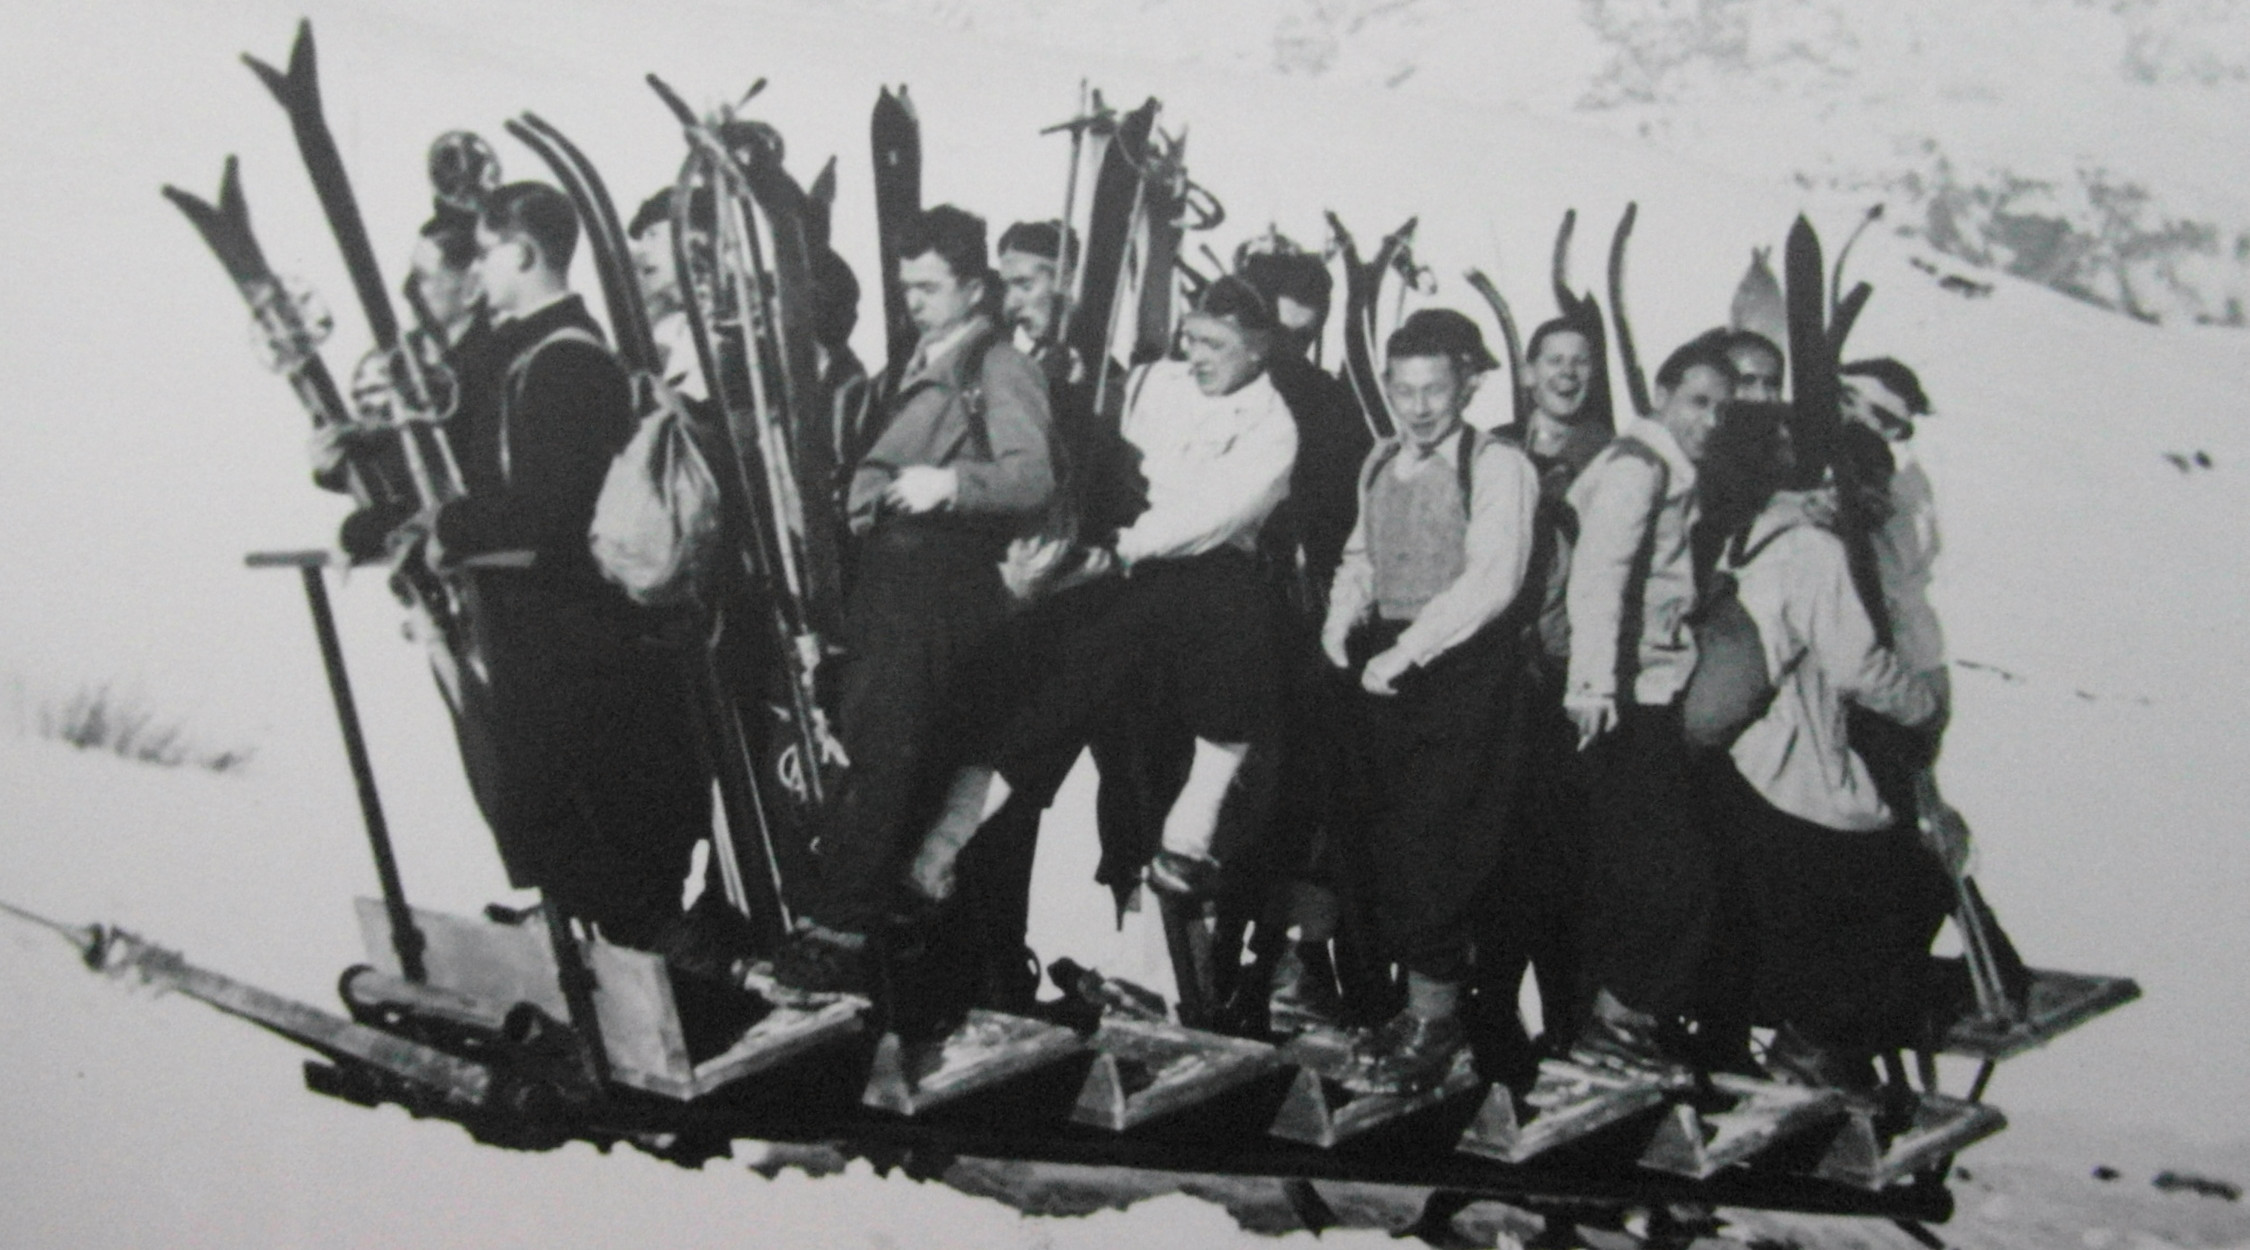 Prima slittovia in Europa sul Monte Bondone 1935